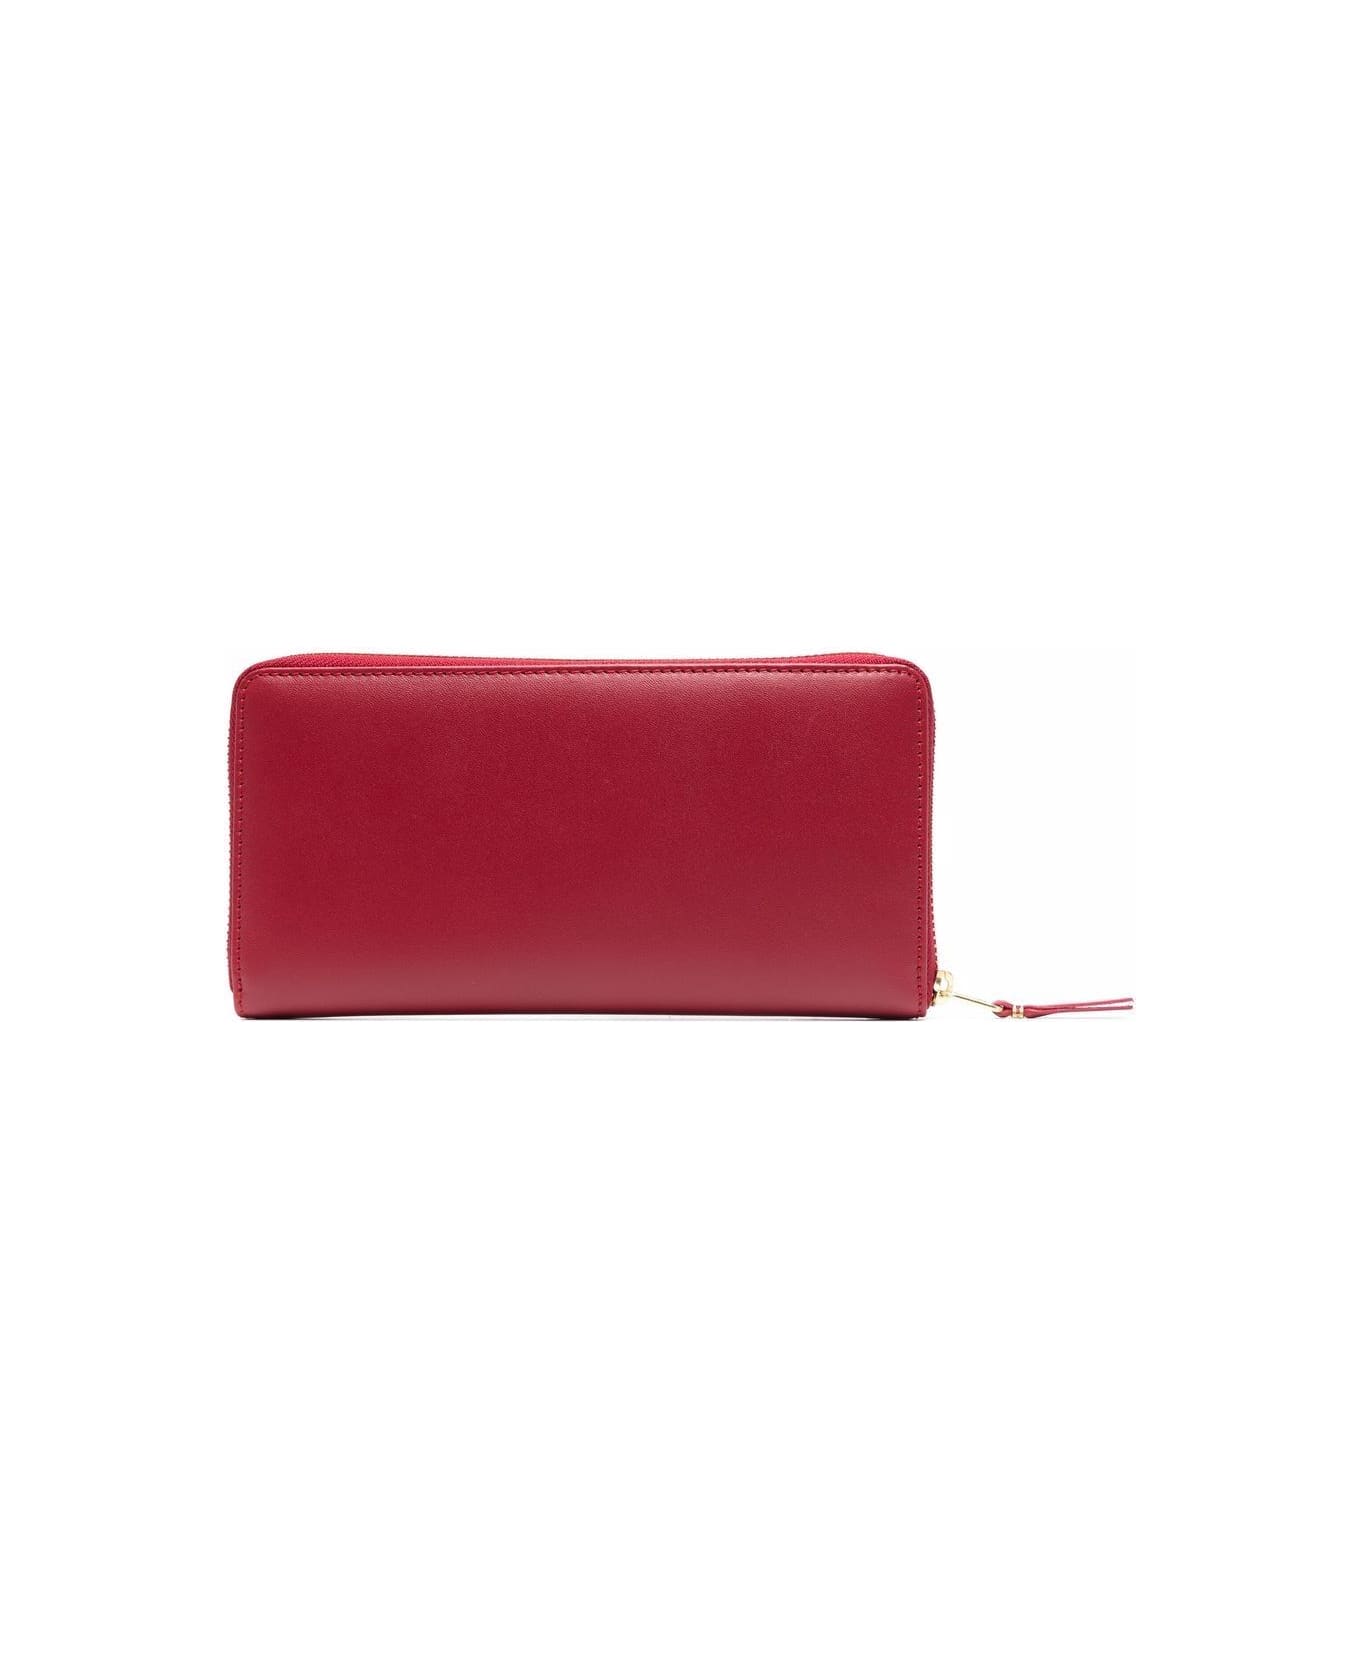 Comme des Garçons Wallet Classic Line Wallet - Red